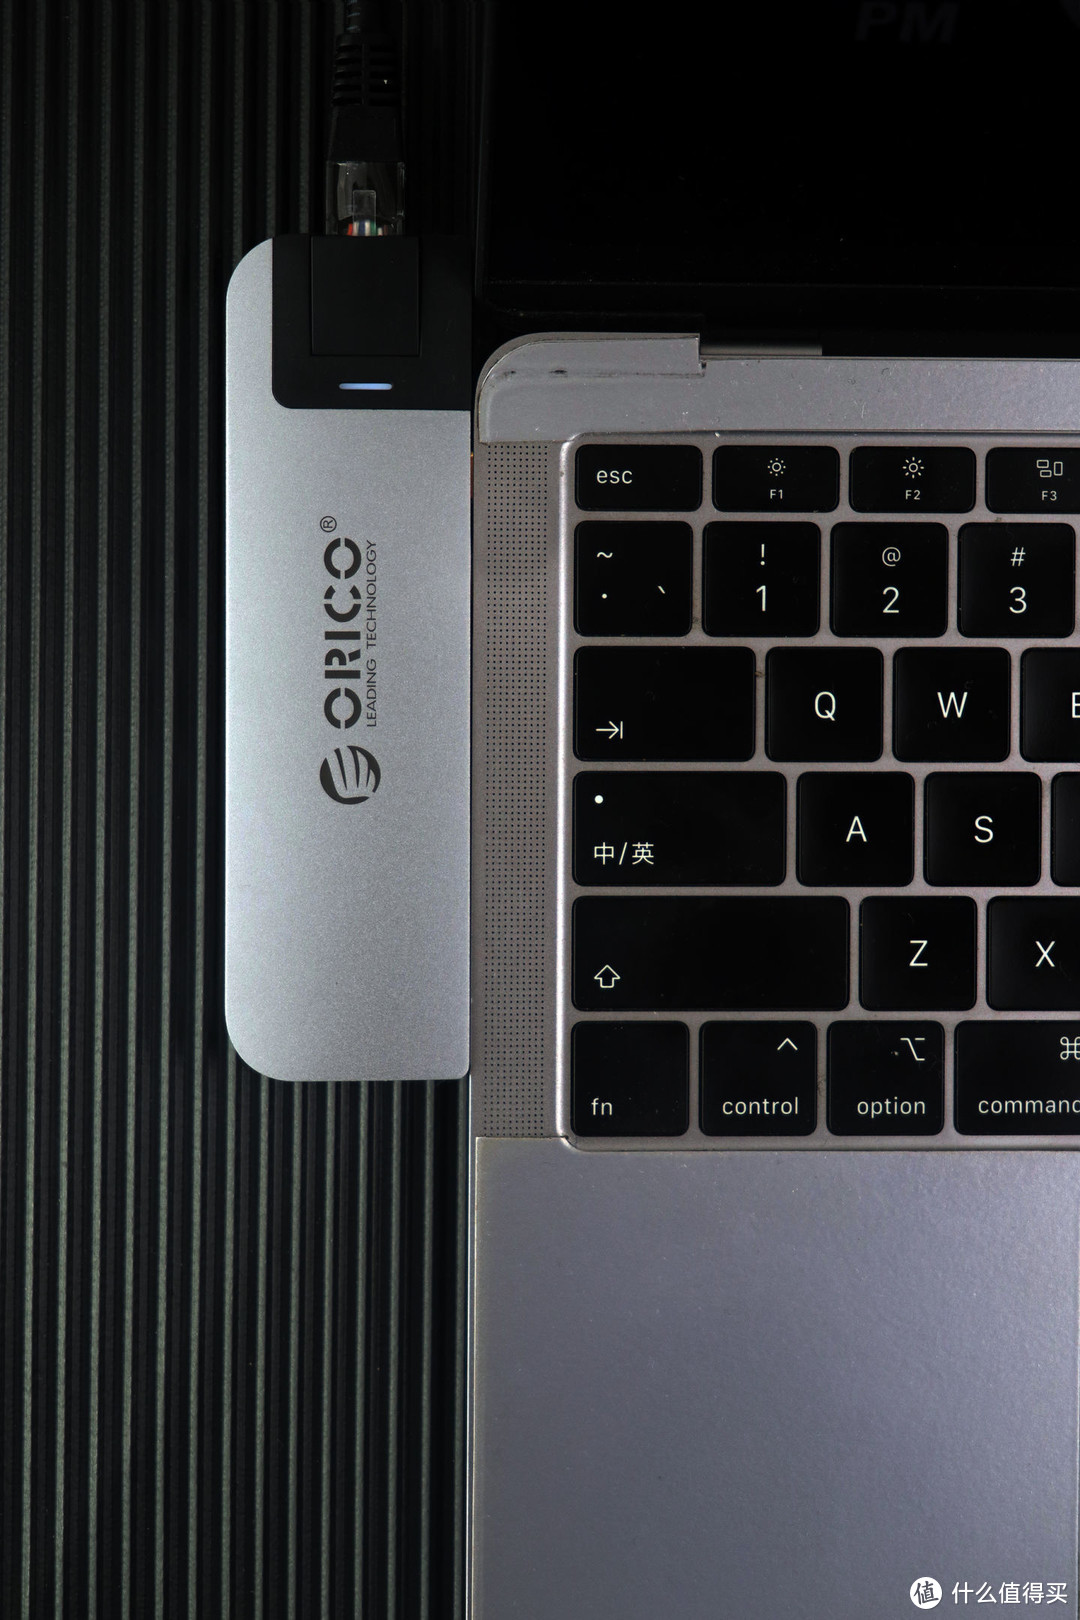 专属设计 贴心使用——Orico/奥睿科MacBook多功能扩展坞体验